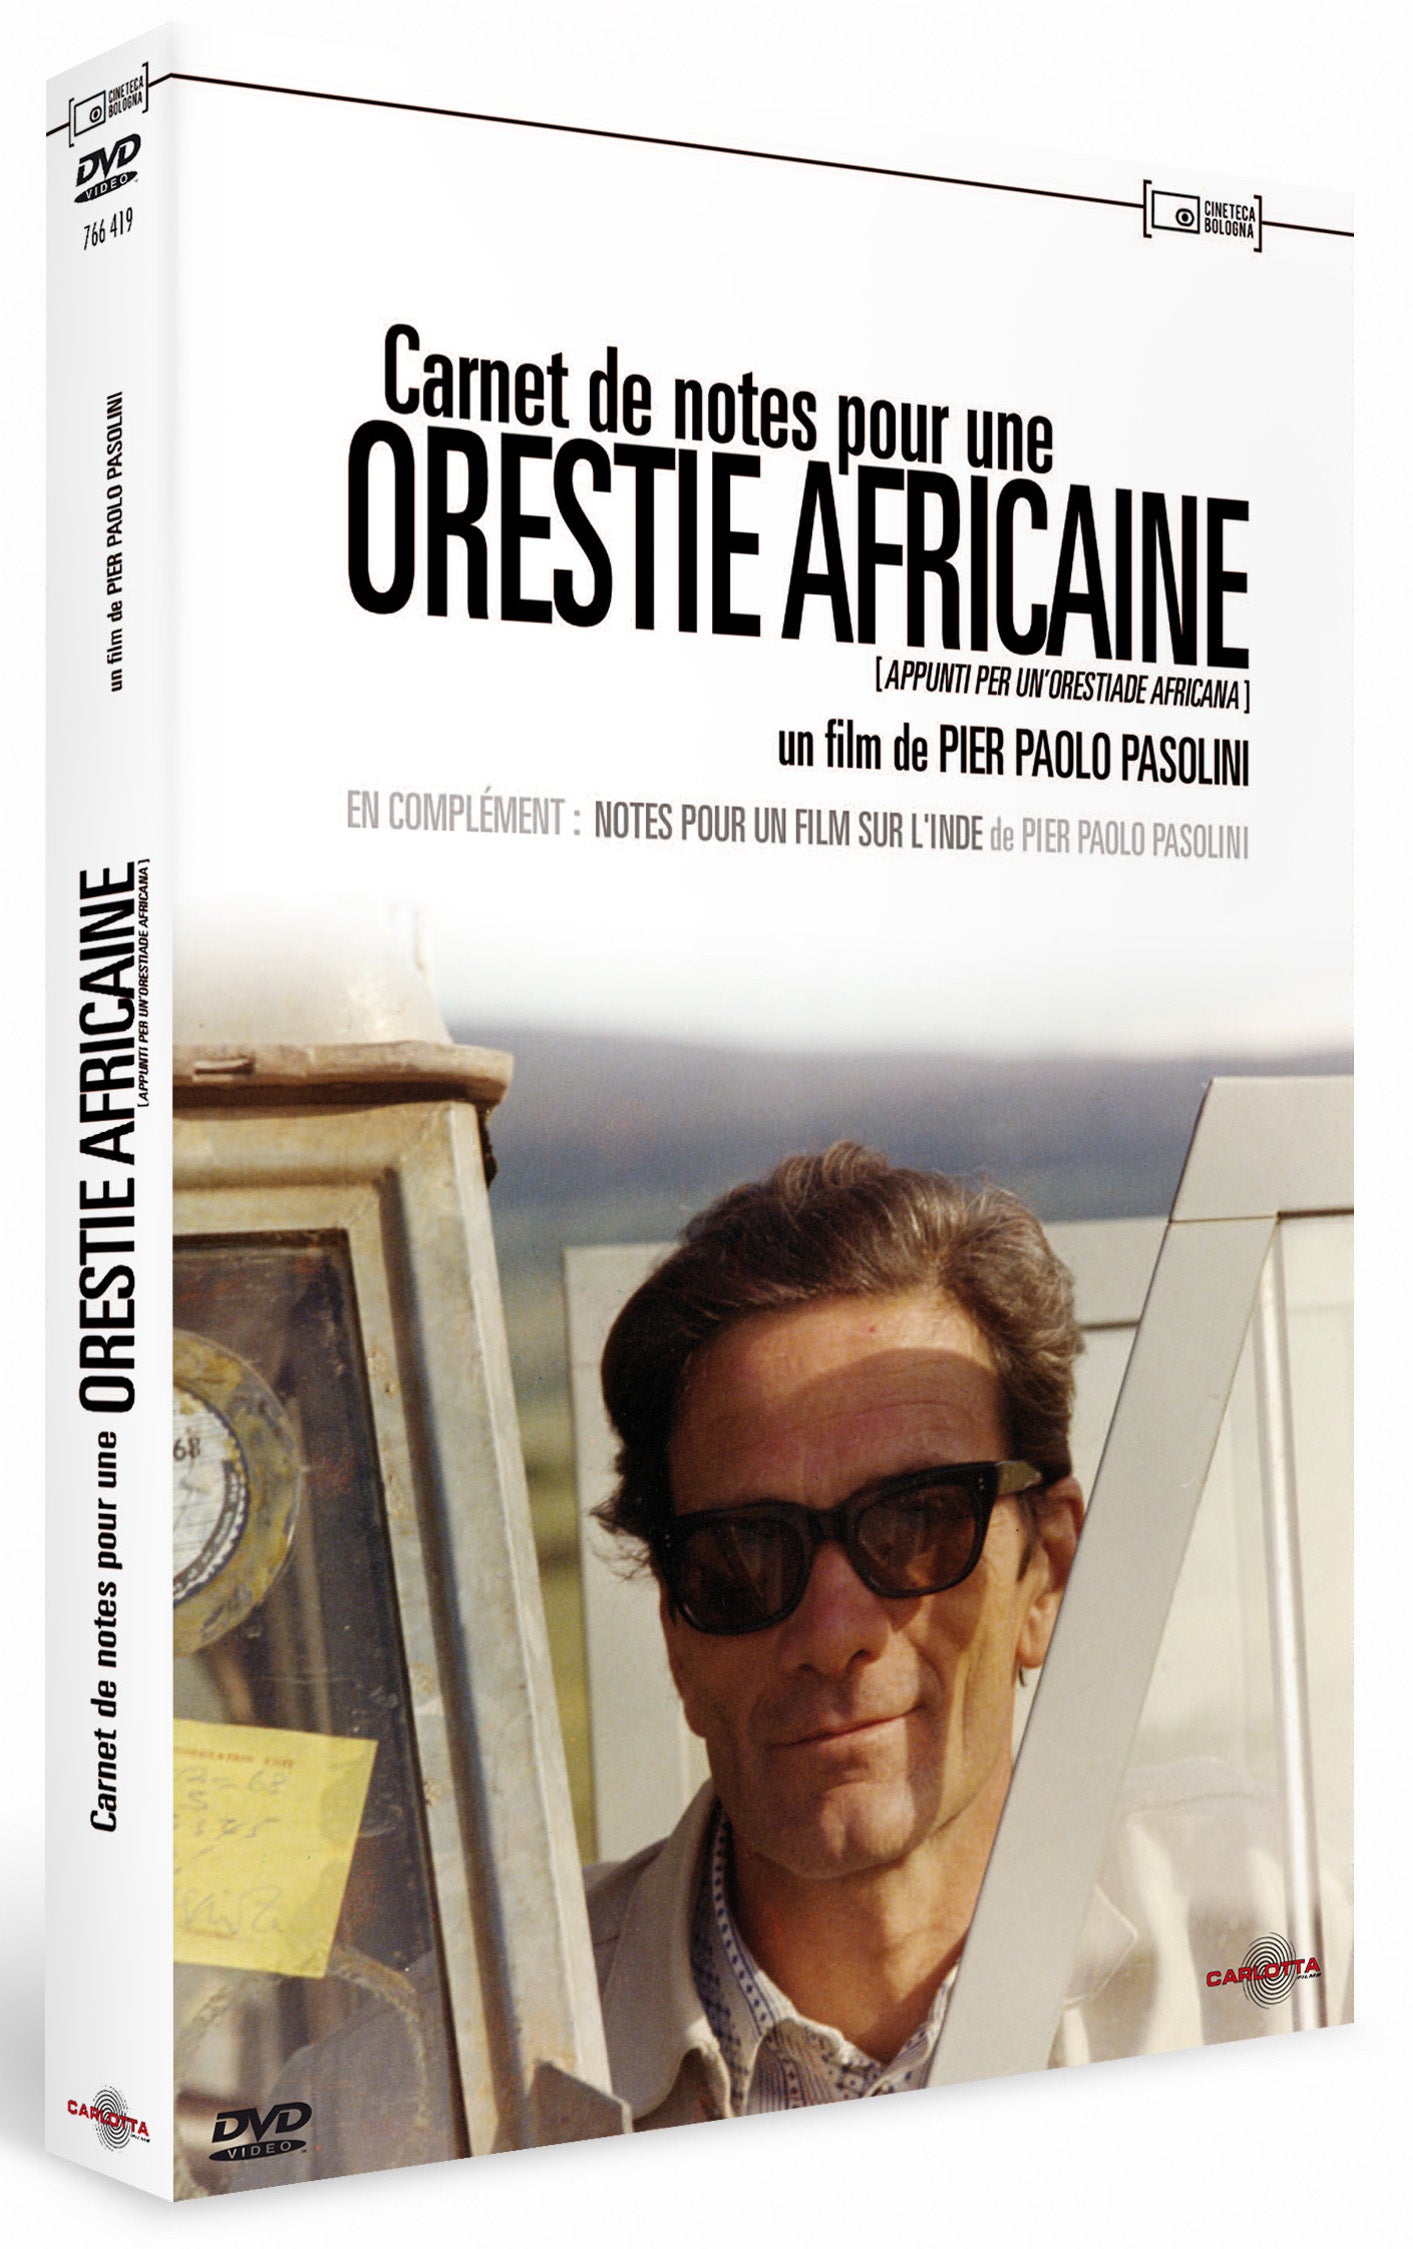 Carnet de notes pour une orestie africaine de Pier Paolo Pasolini - DVD - Carlotta Films - La Boutique